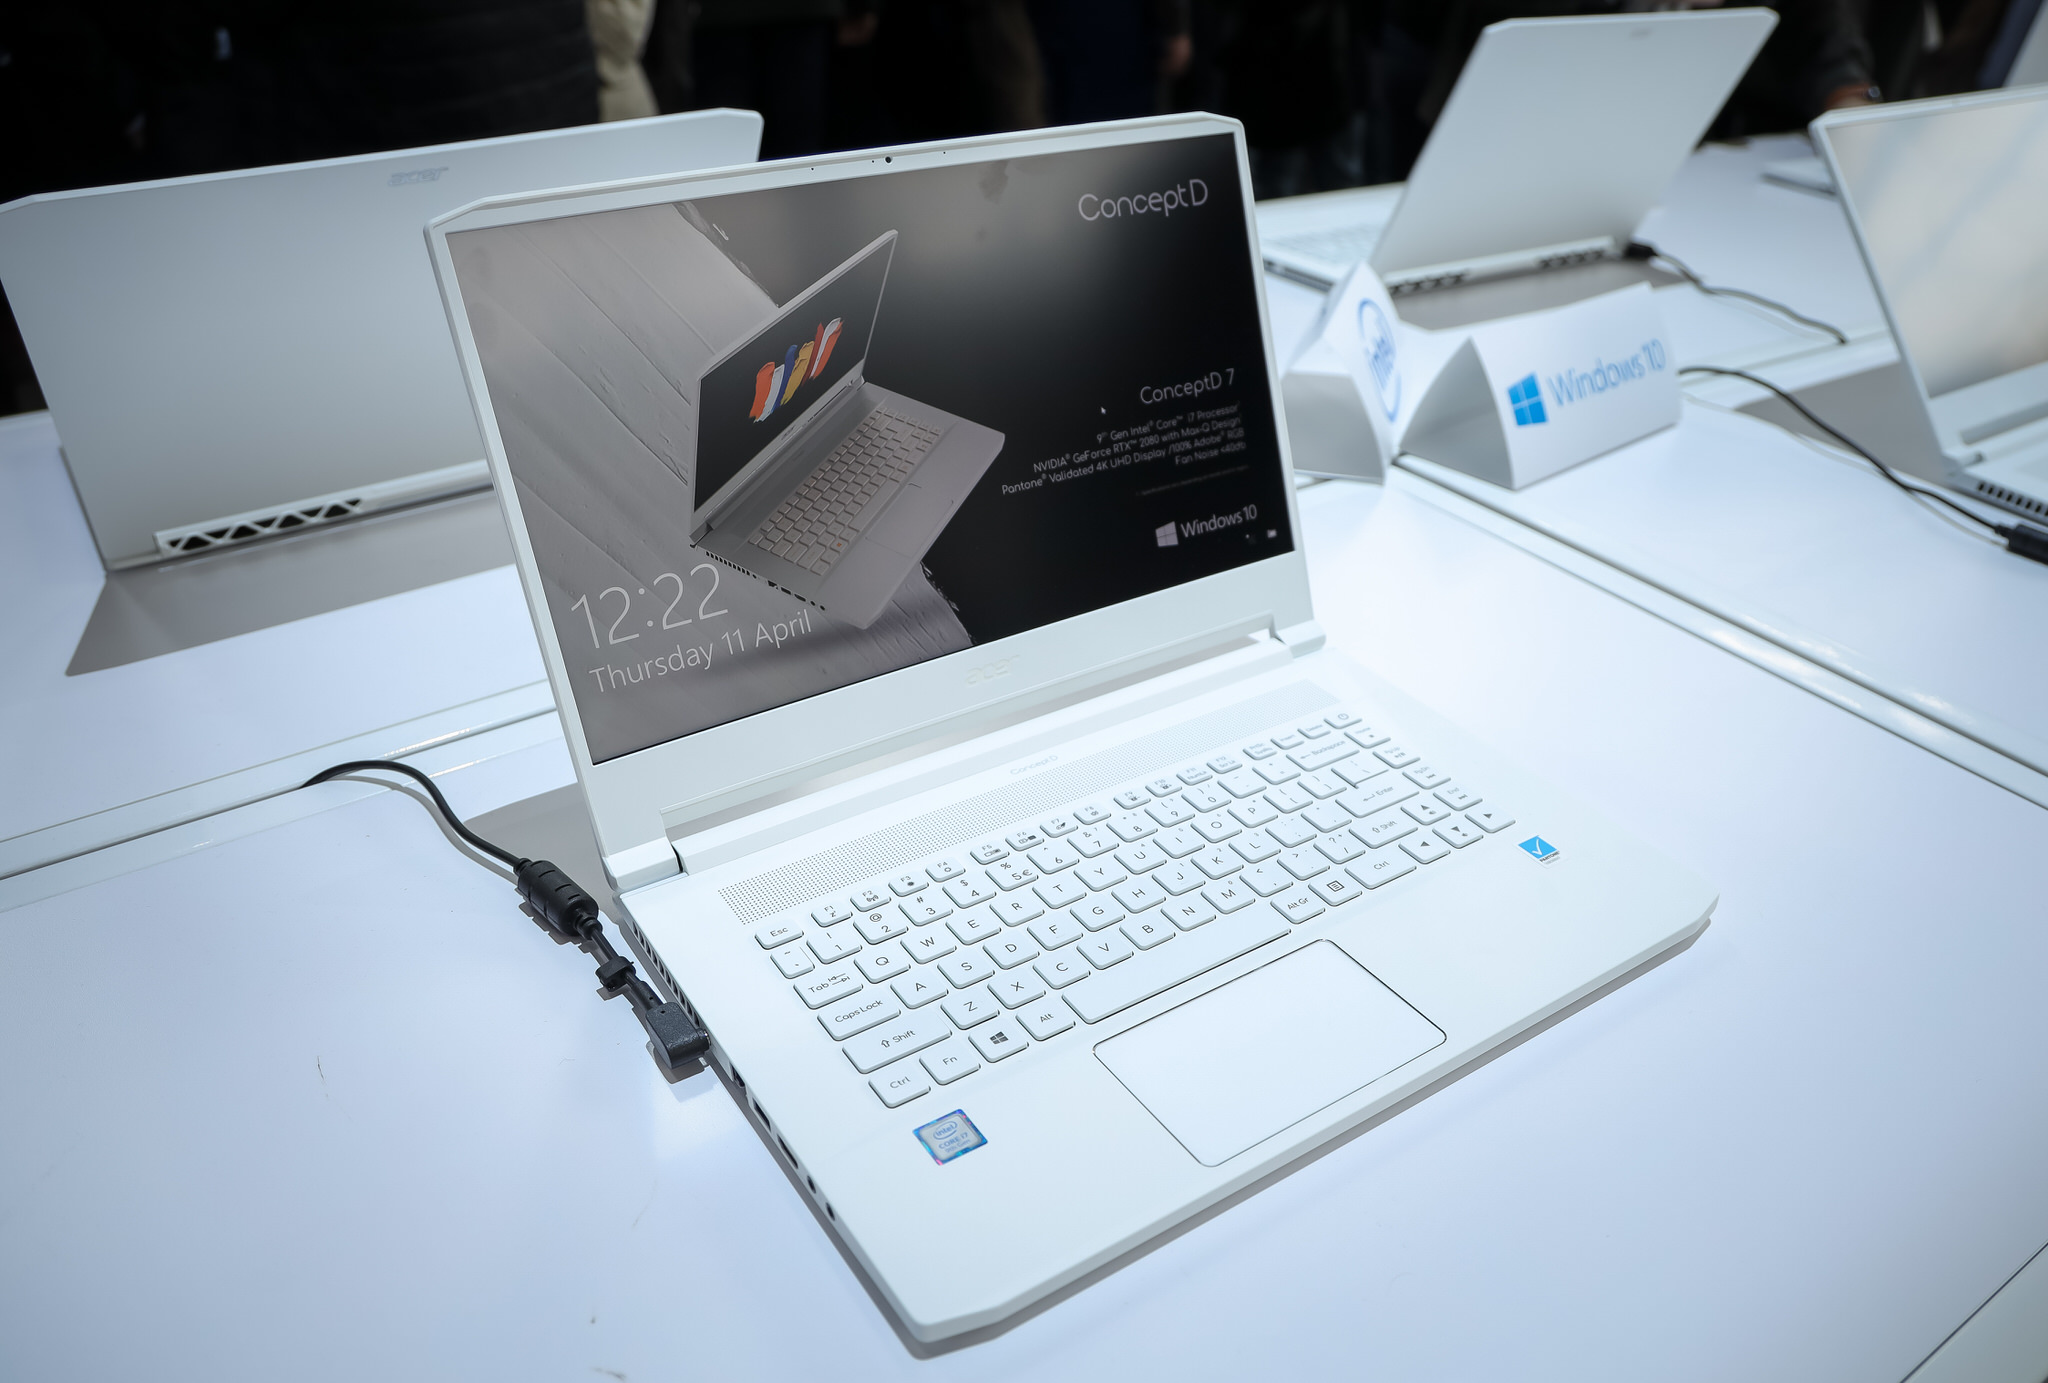 Acer giới thiệu ConceptD, 7 dòng sản phẩm được thiết kế cho nhà sáng tạo